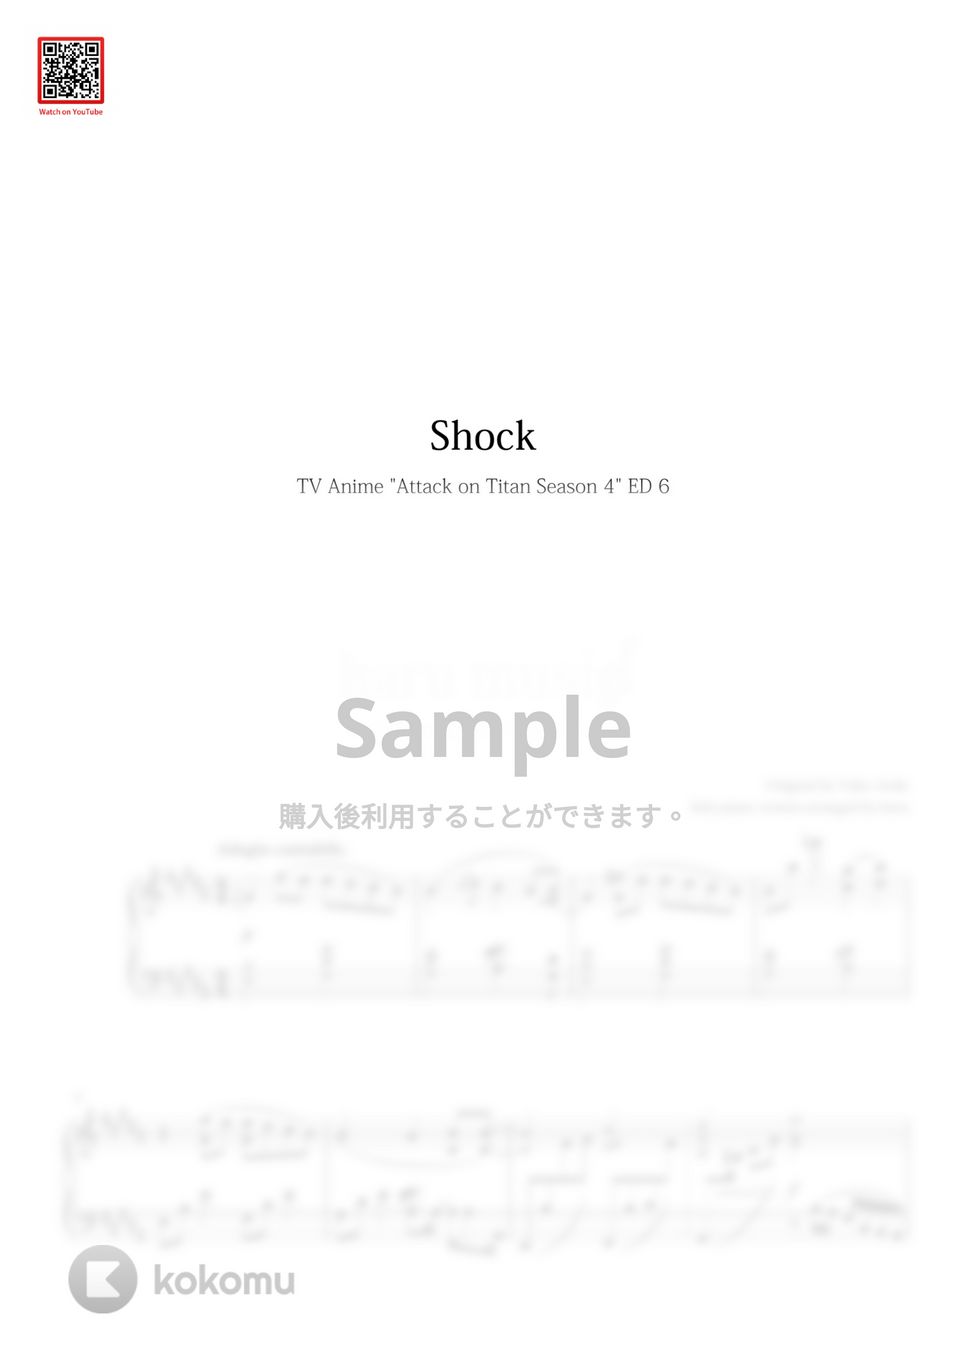 進撃の巨人 4 Final Season - 衝撃 (Shock) by haru